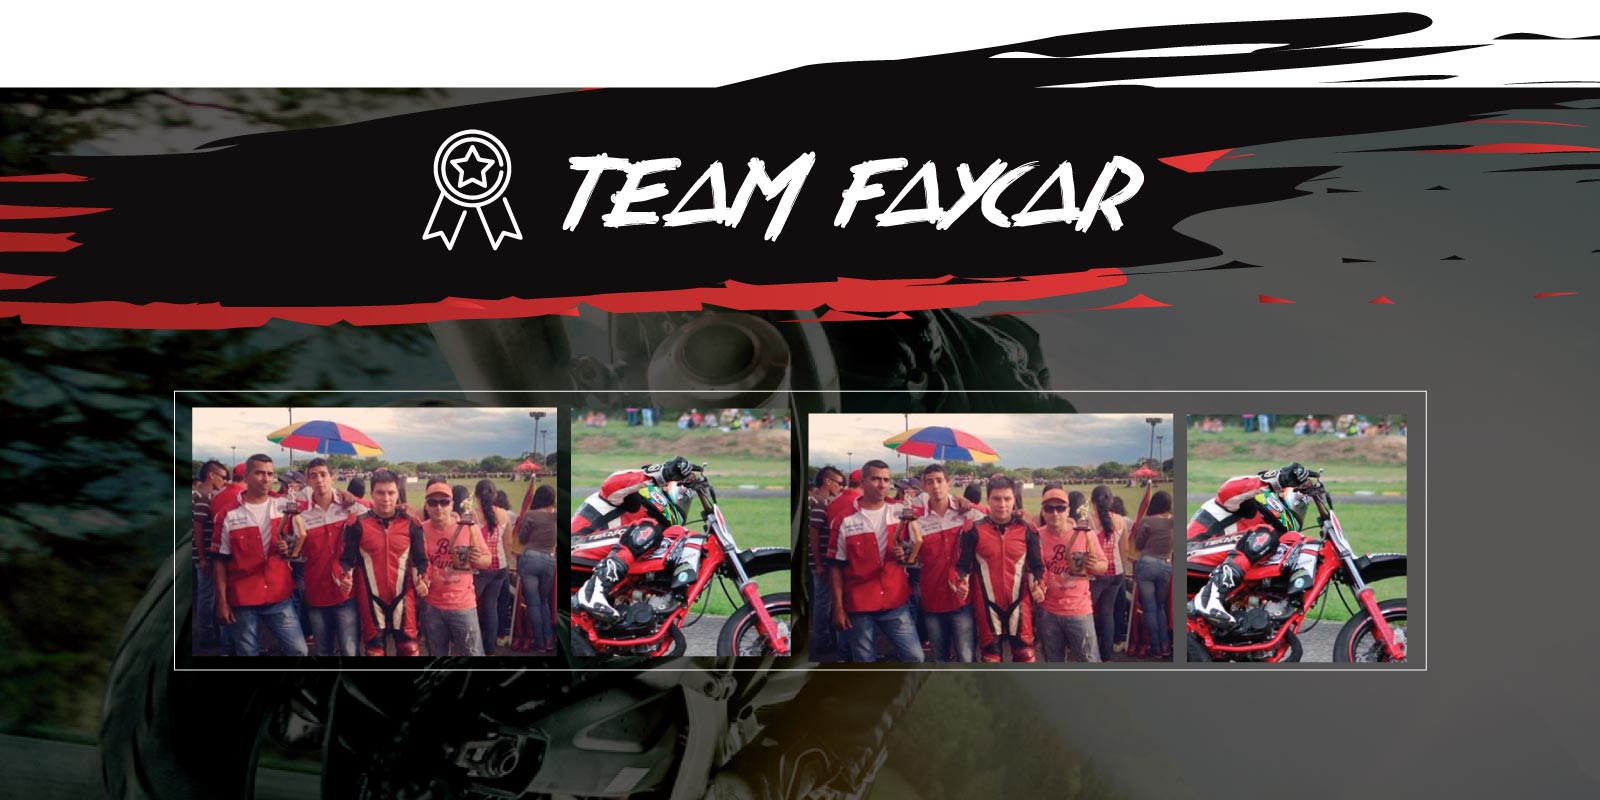 Faycar Team